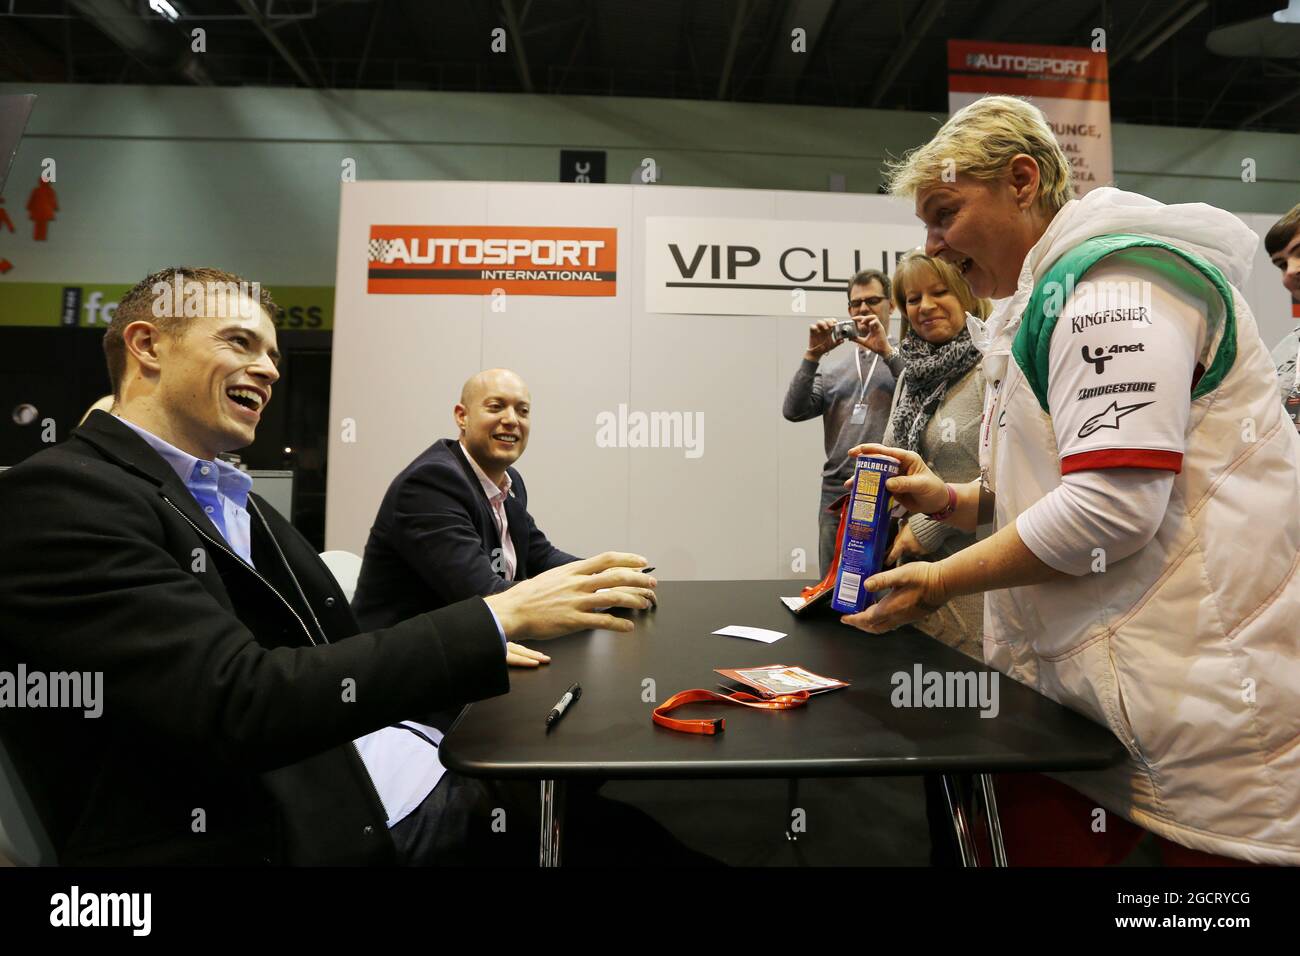 (De gauche à droite) : Paul di Resta (GBR) Sahara Force India F1 et Rob Huff (GBR) signent des autographes pour les fans dans le salon VIP Club. Autosport International, dimanche 13 janvier 2013. National Exhibition Centre, Birmingham, Angleterre. Banque D'Images